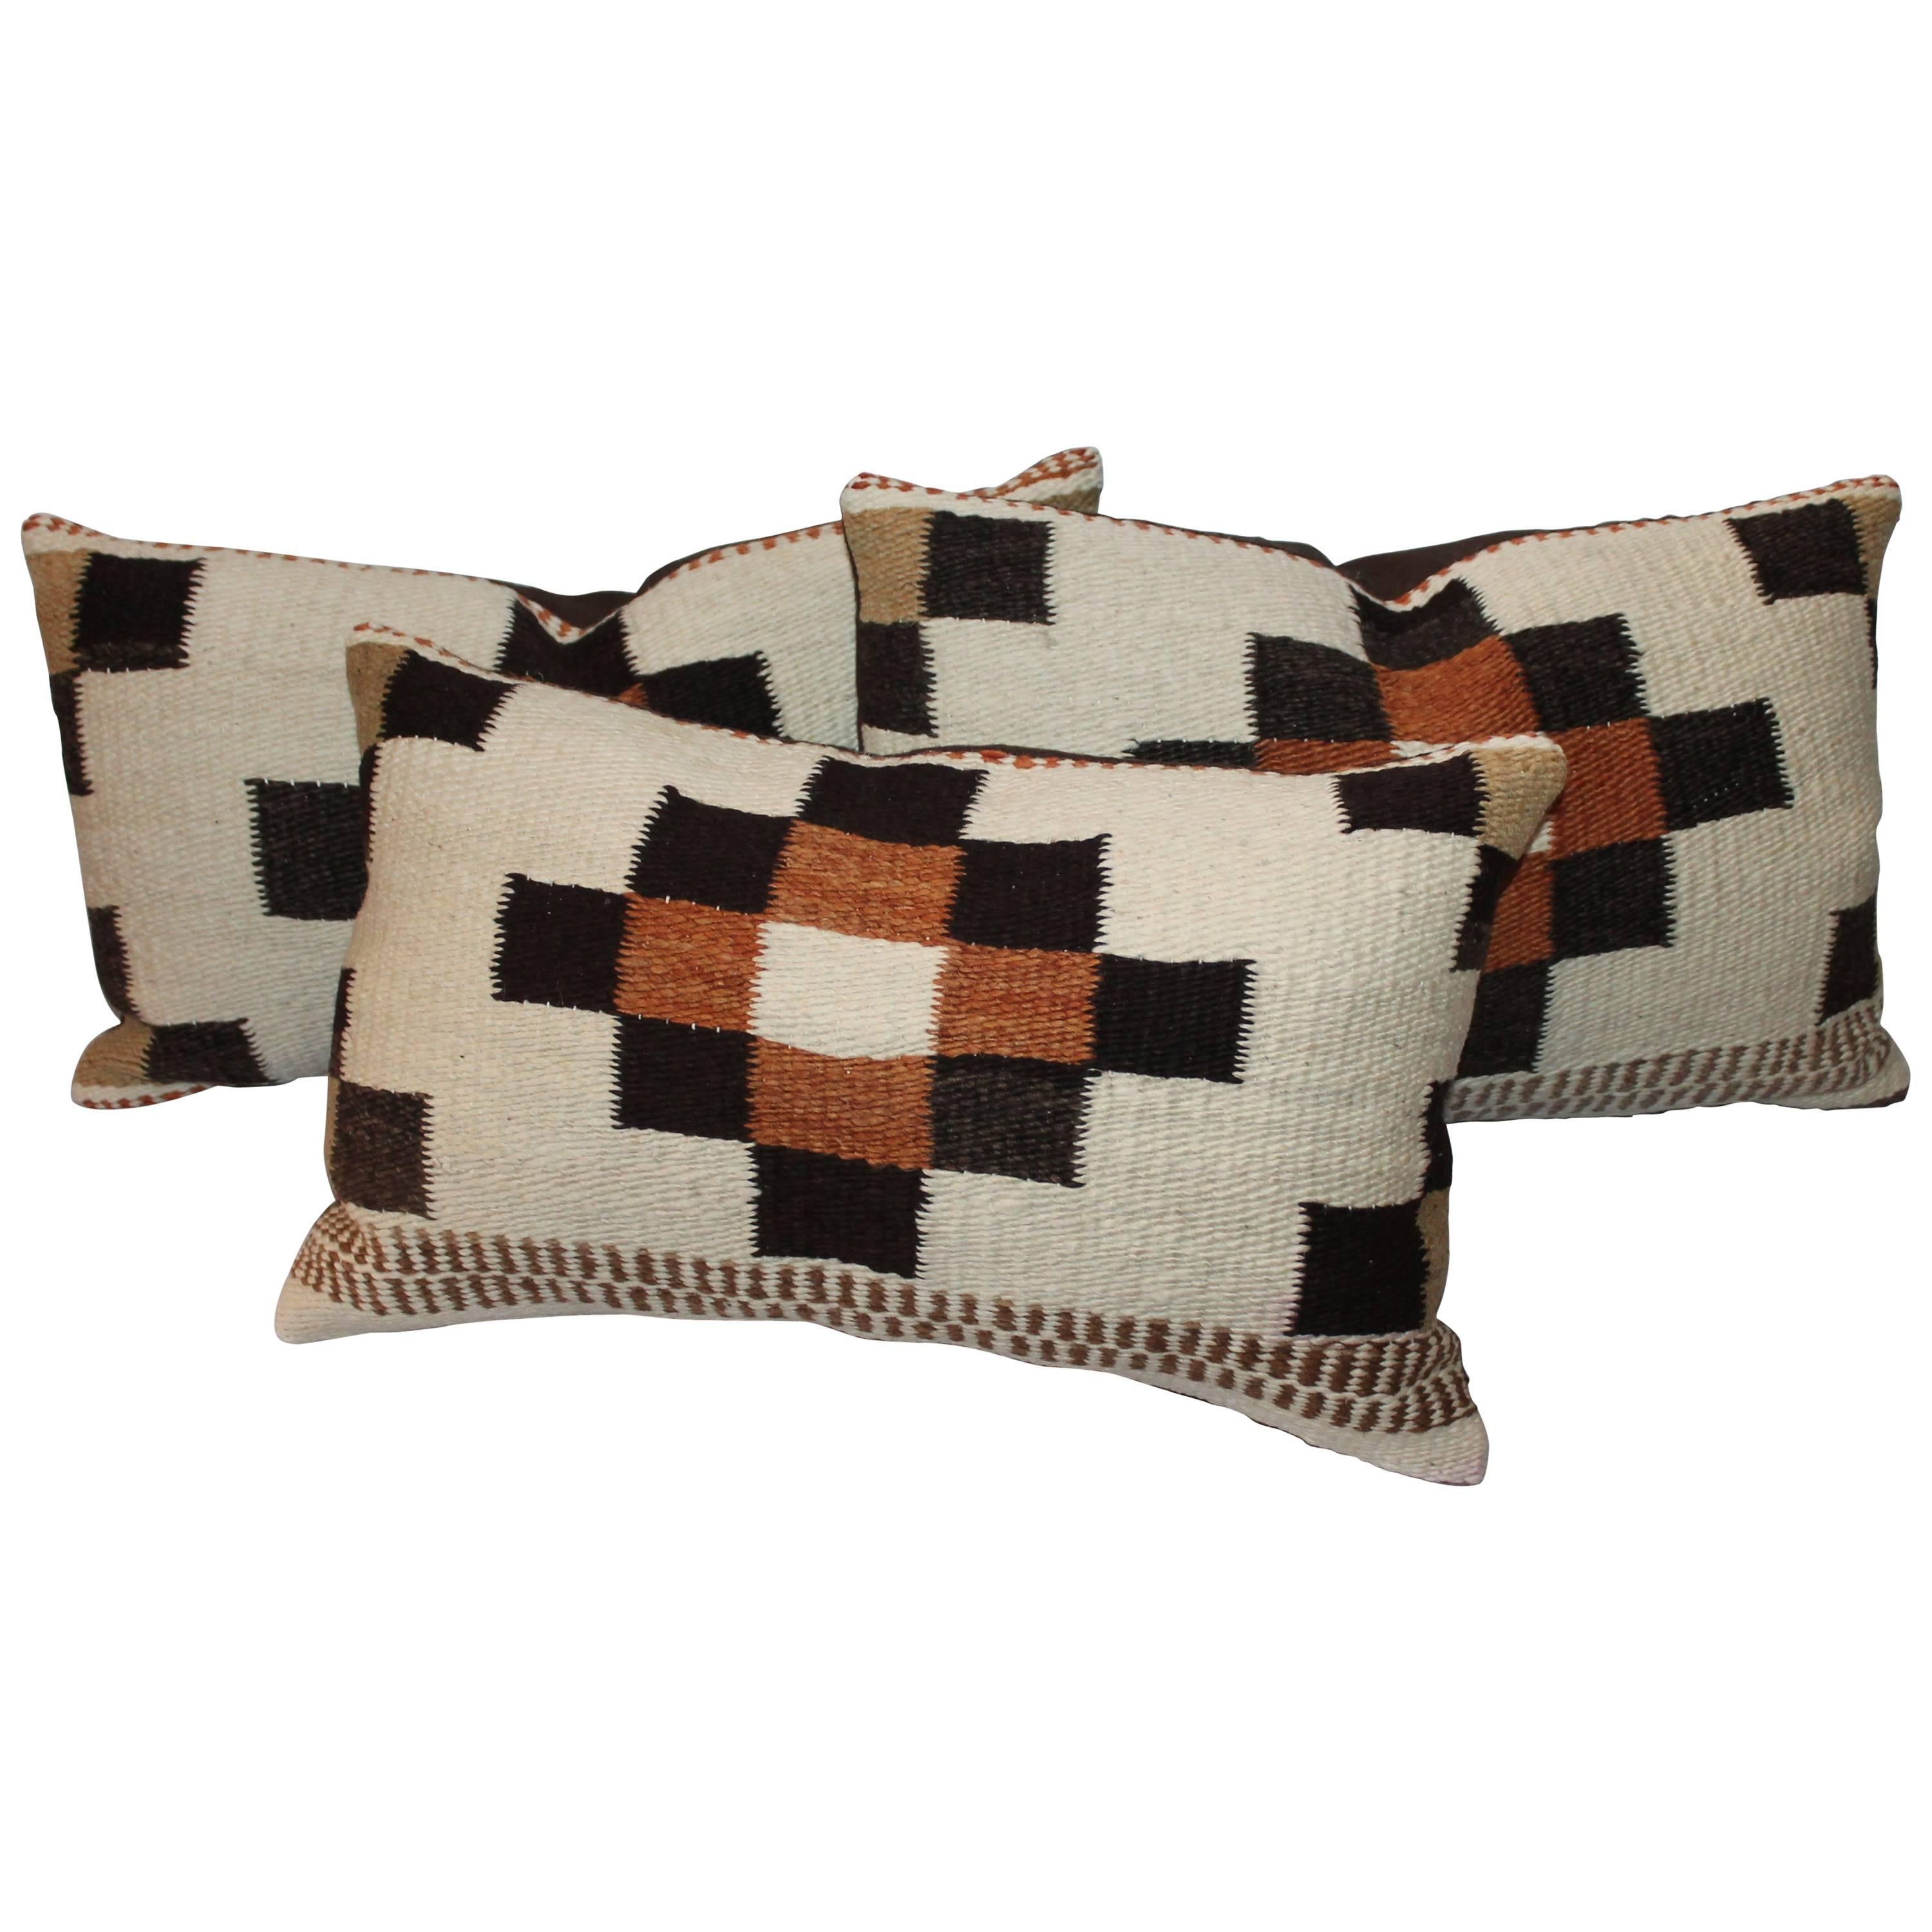 Group of Three Navajo Indian Weaving Bolster Pillows